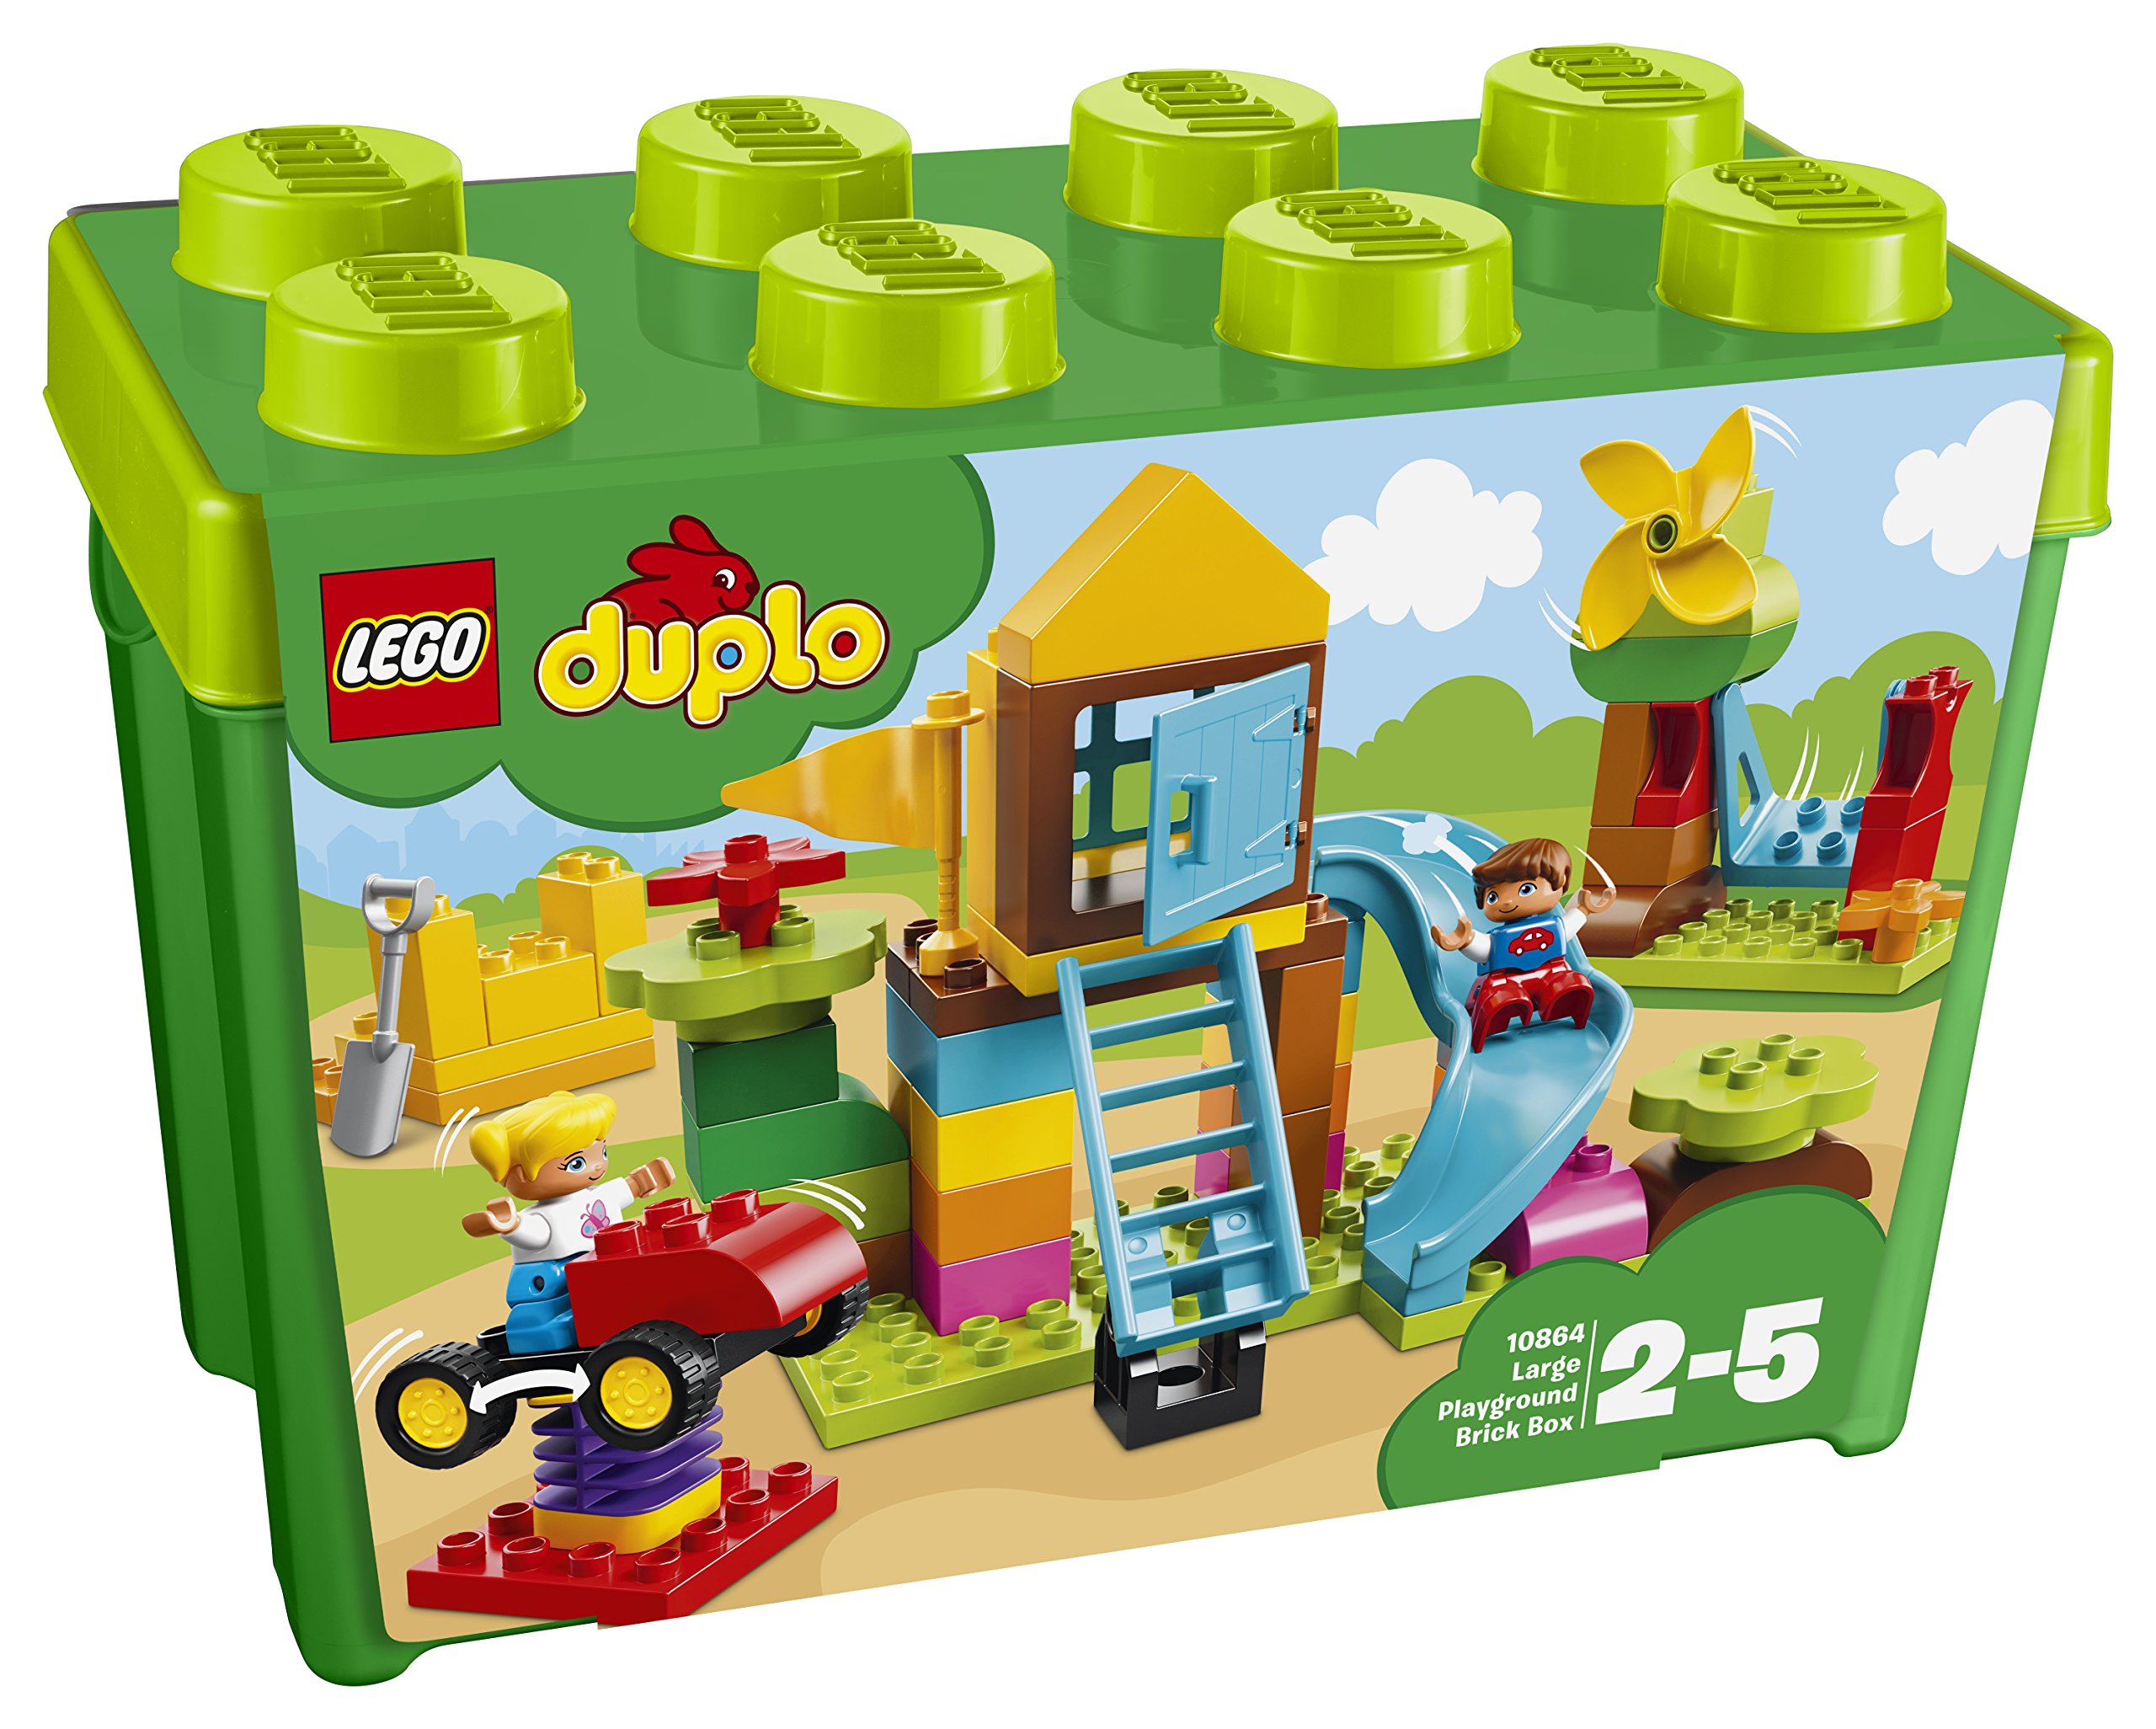 Lego Duplo Stone Box With Large Playground Large Stones